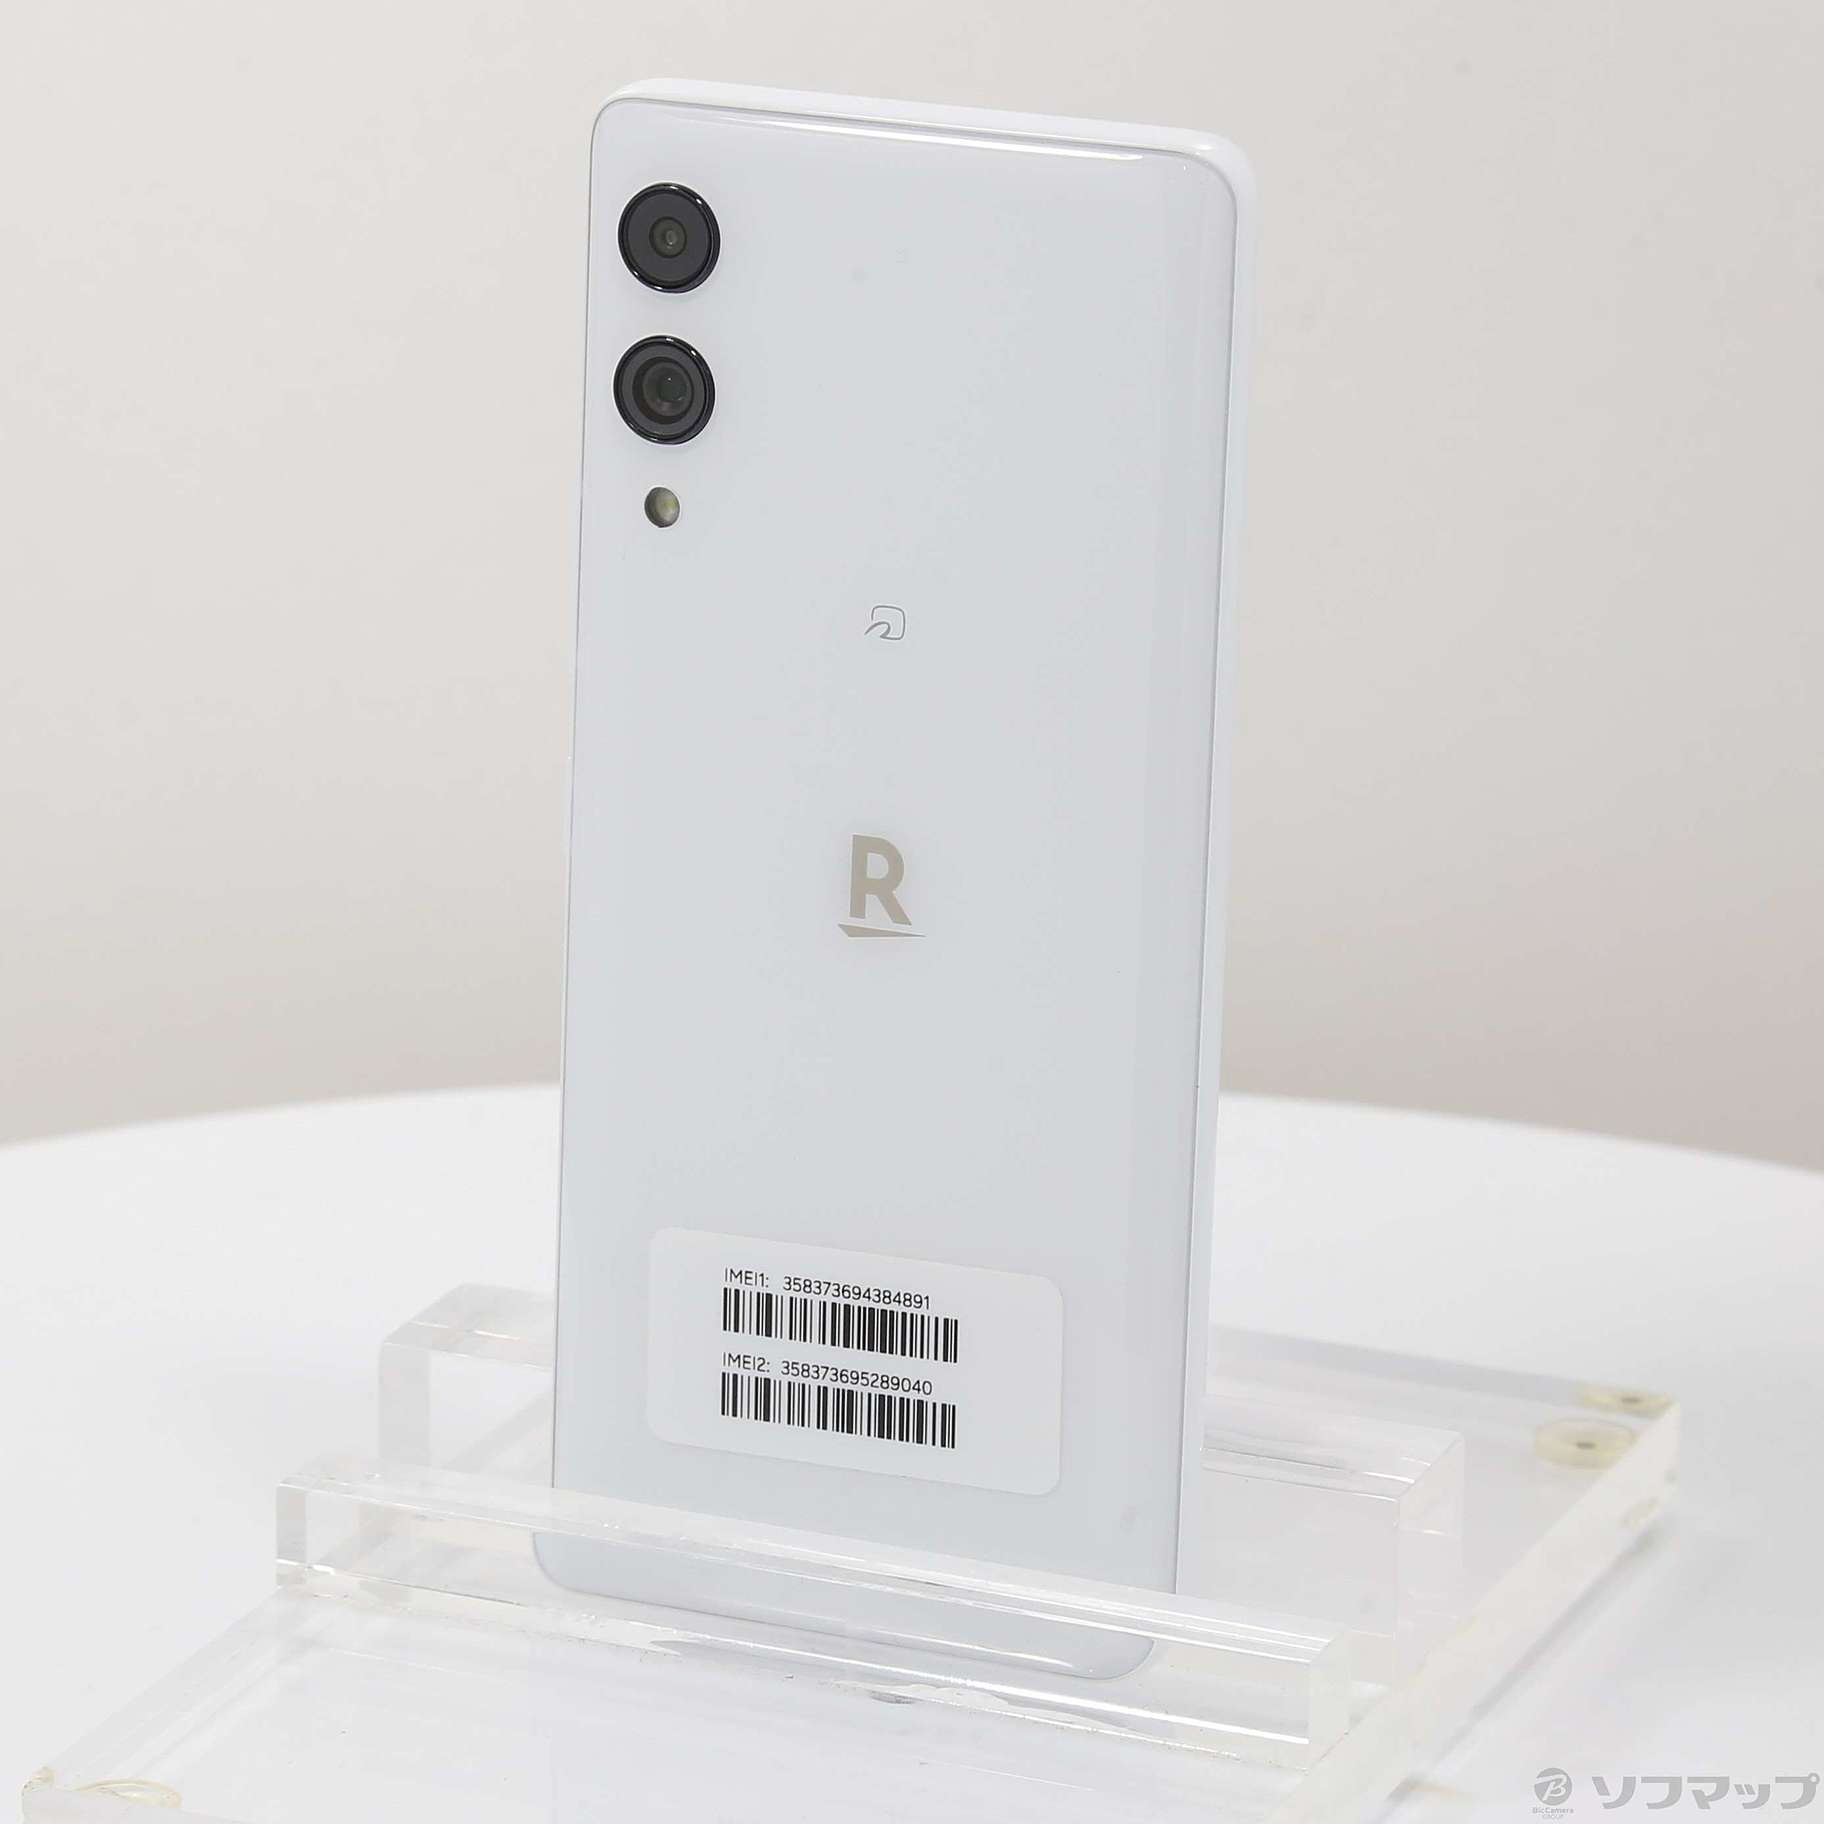 Rakuten Hand 5G ホワイト 128 GB SIMフリー